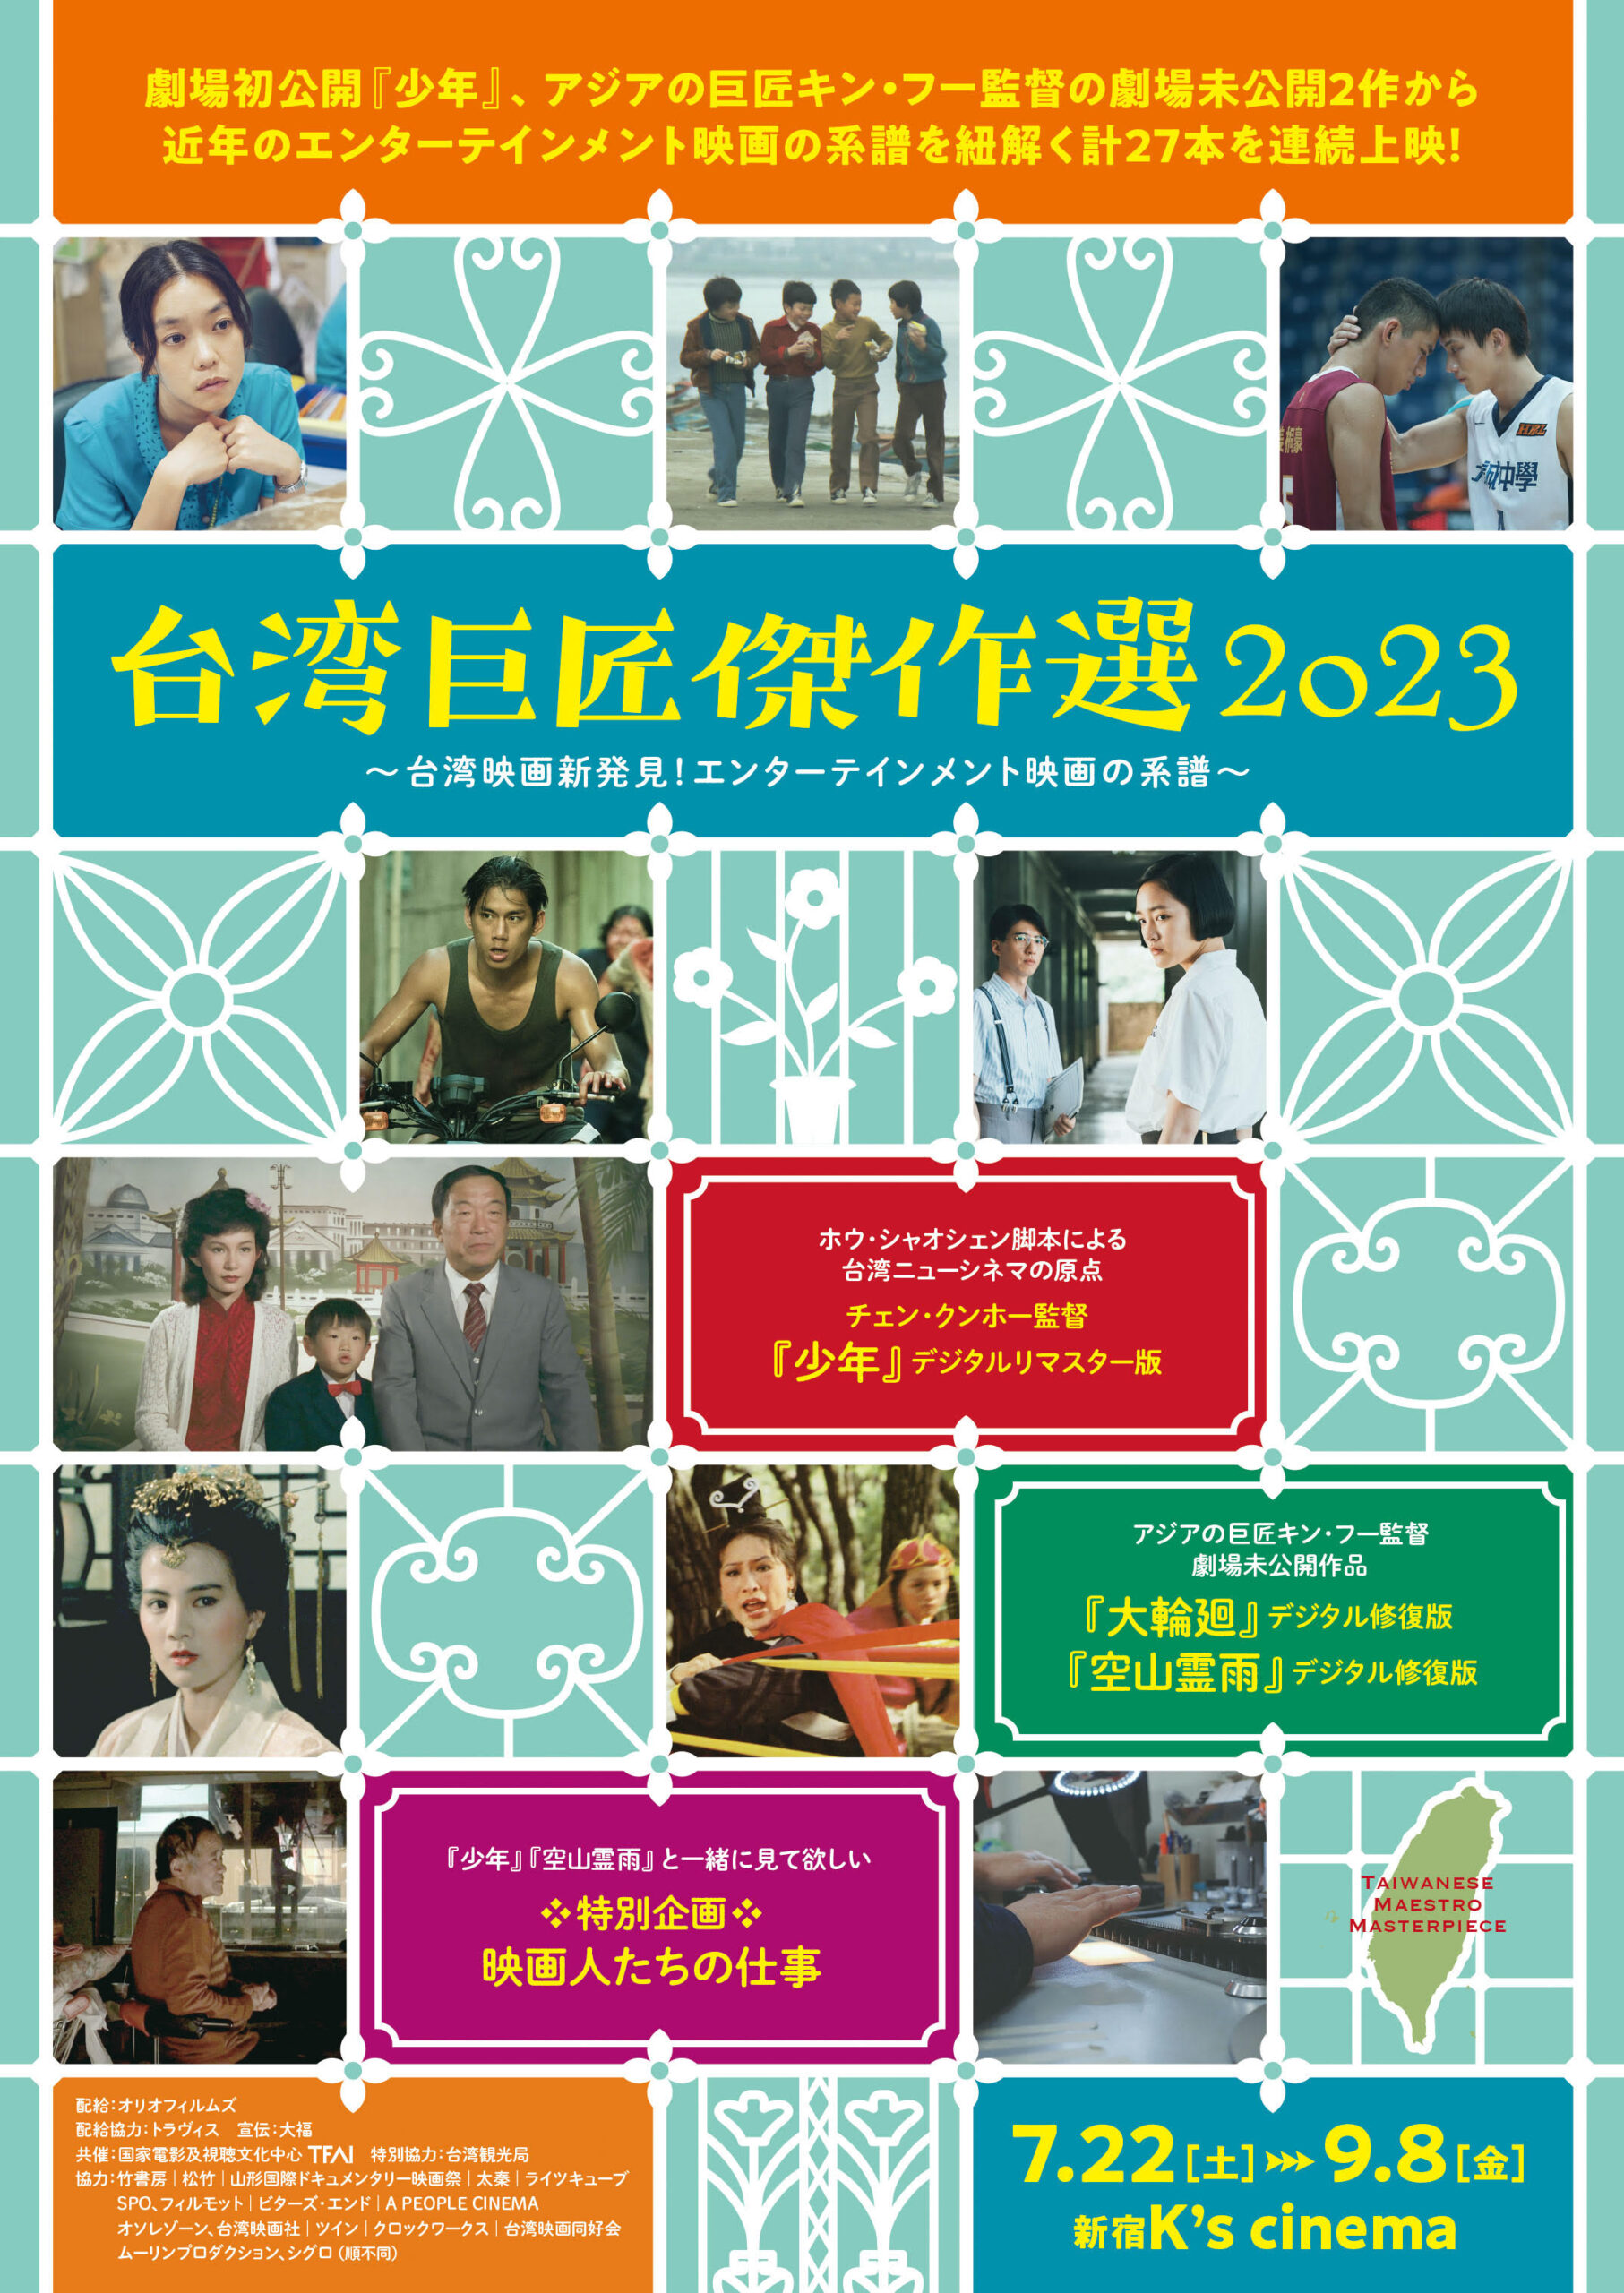 香港の巨匠アン・ホイ監督の代表作2作『男人四十』『桃さんのしあわせ』11月に限定上映